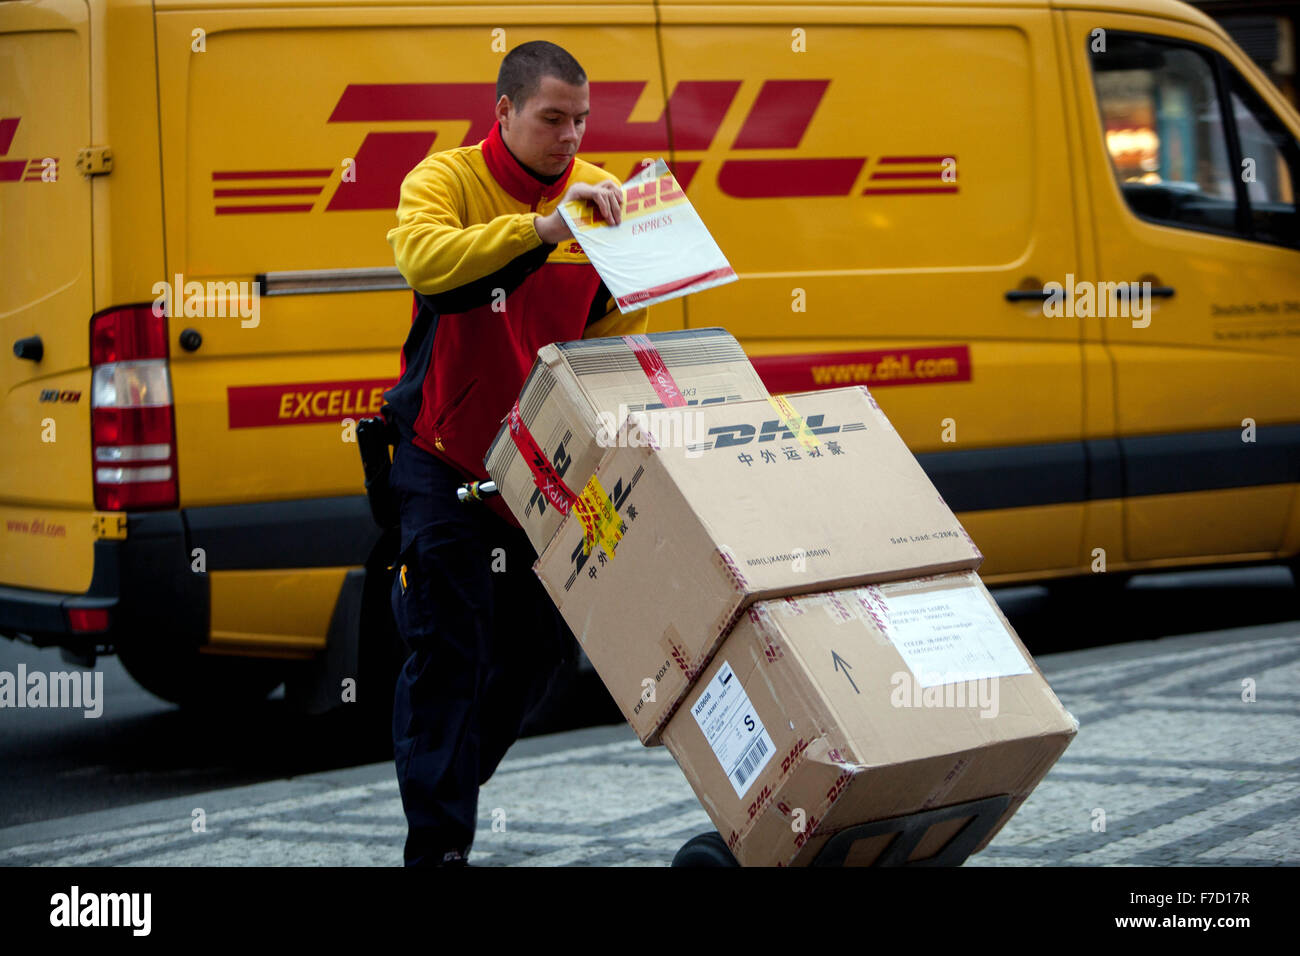 Employé de DHL livrant des colis, République tchèque Service de livraison de colis Banque D'Images